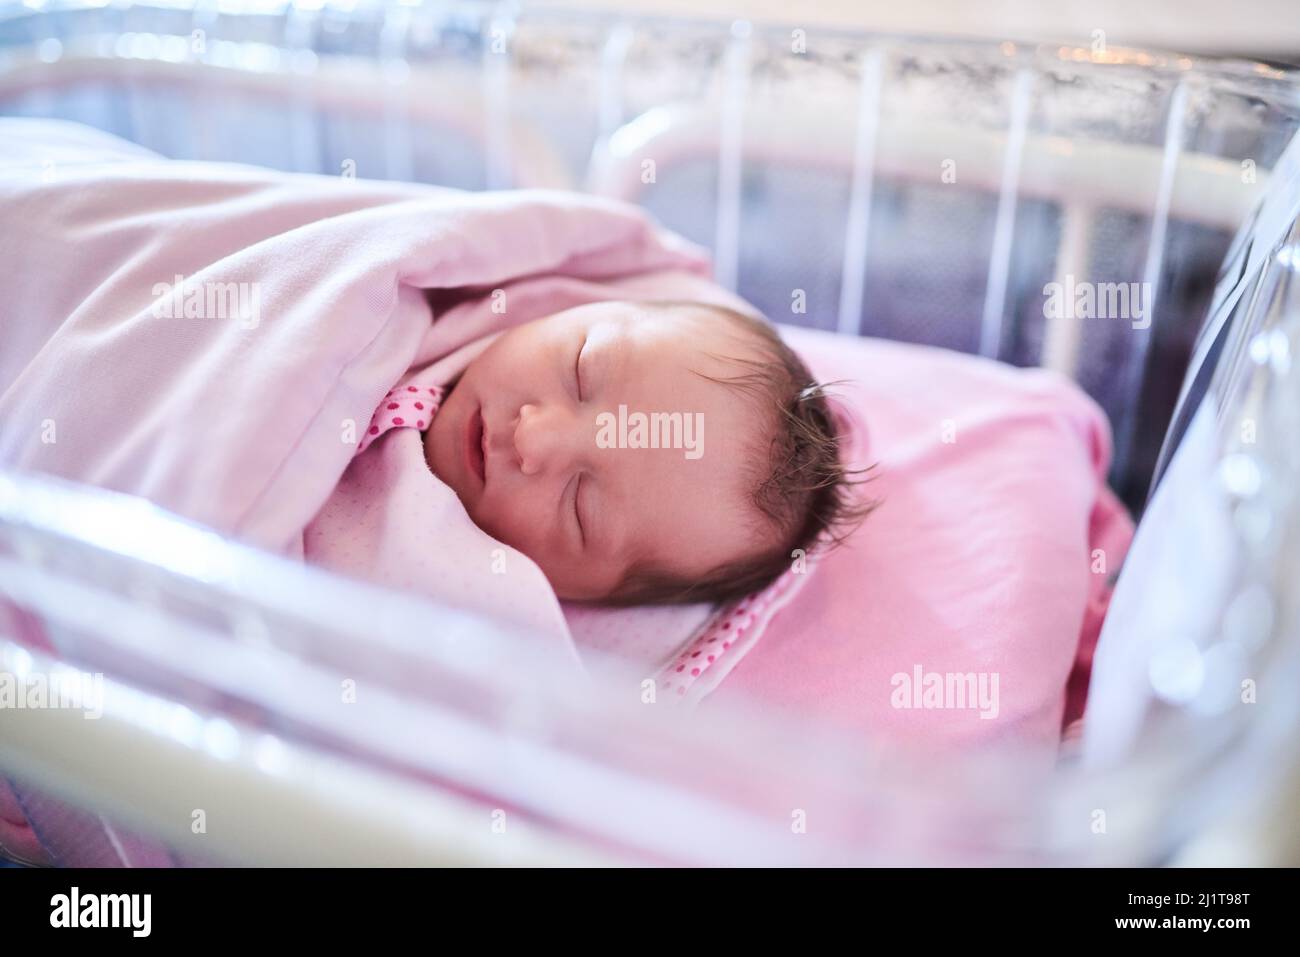 Esperamos que todos sus sueños se hagan realidad. Disparo de una niña recién nacida envuelto en una manta en el hospital. Foto de stock